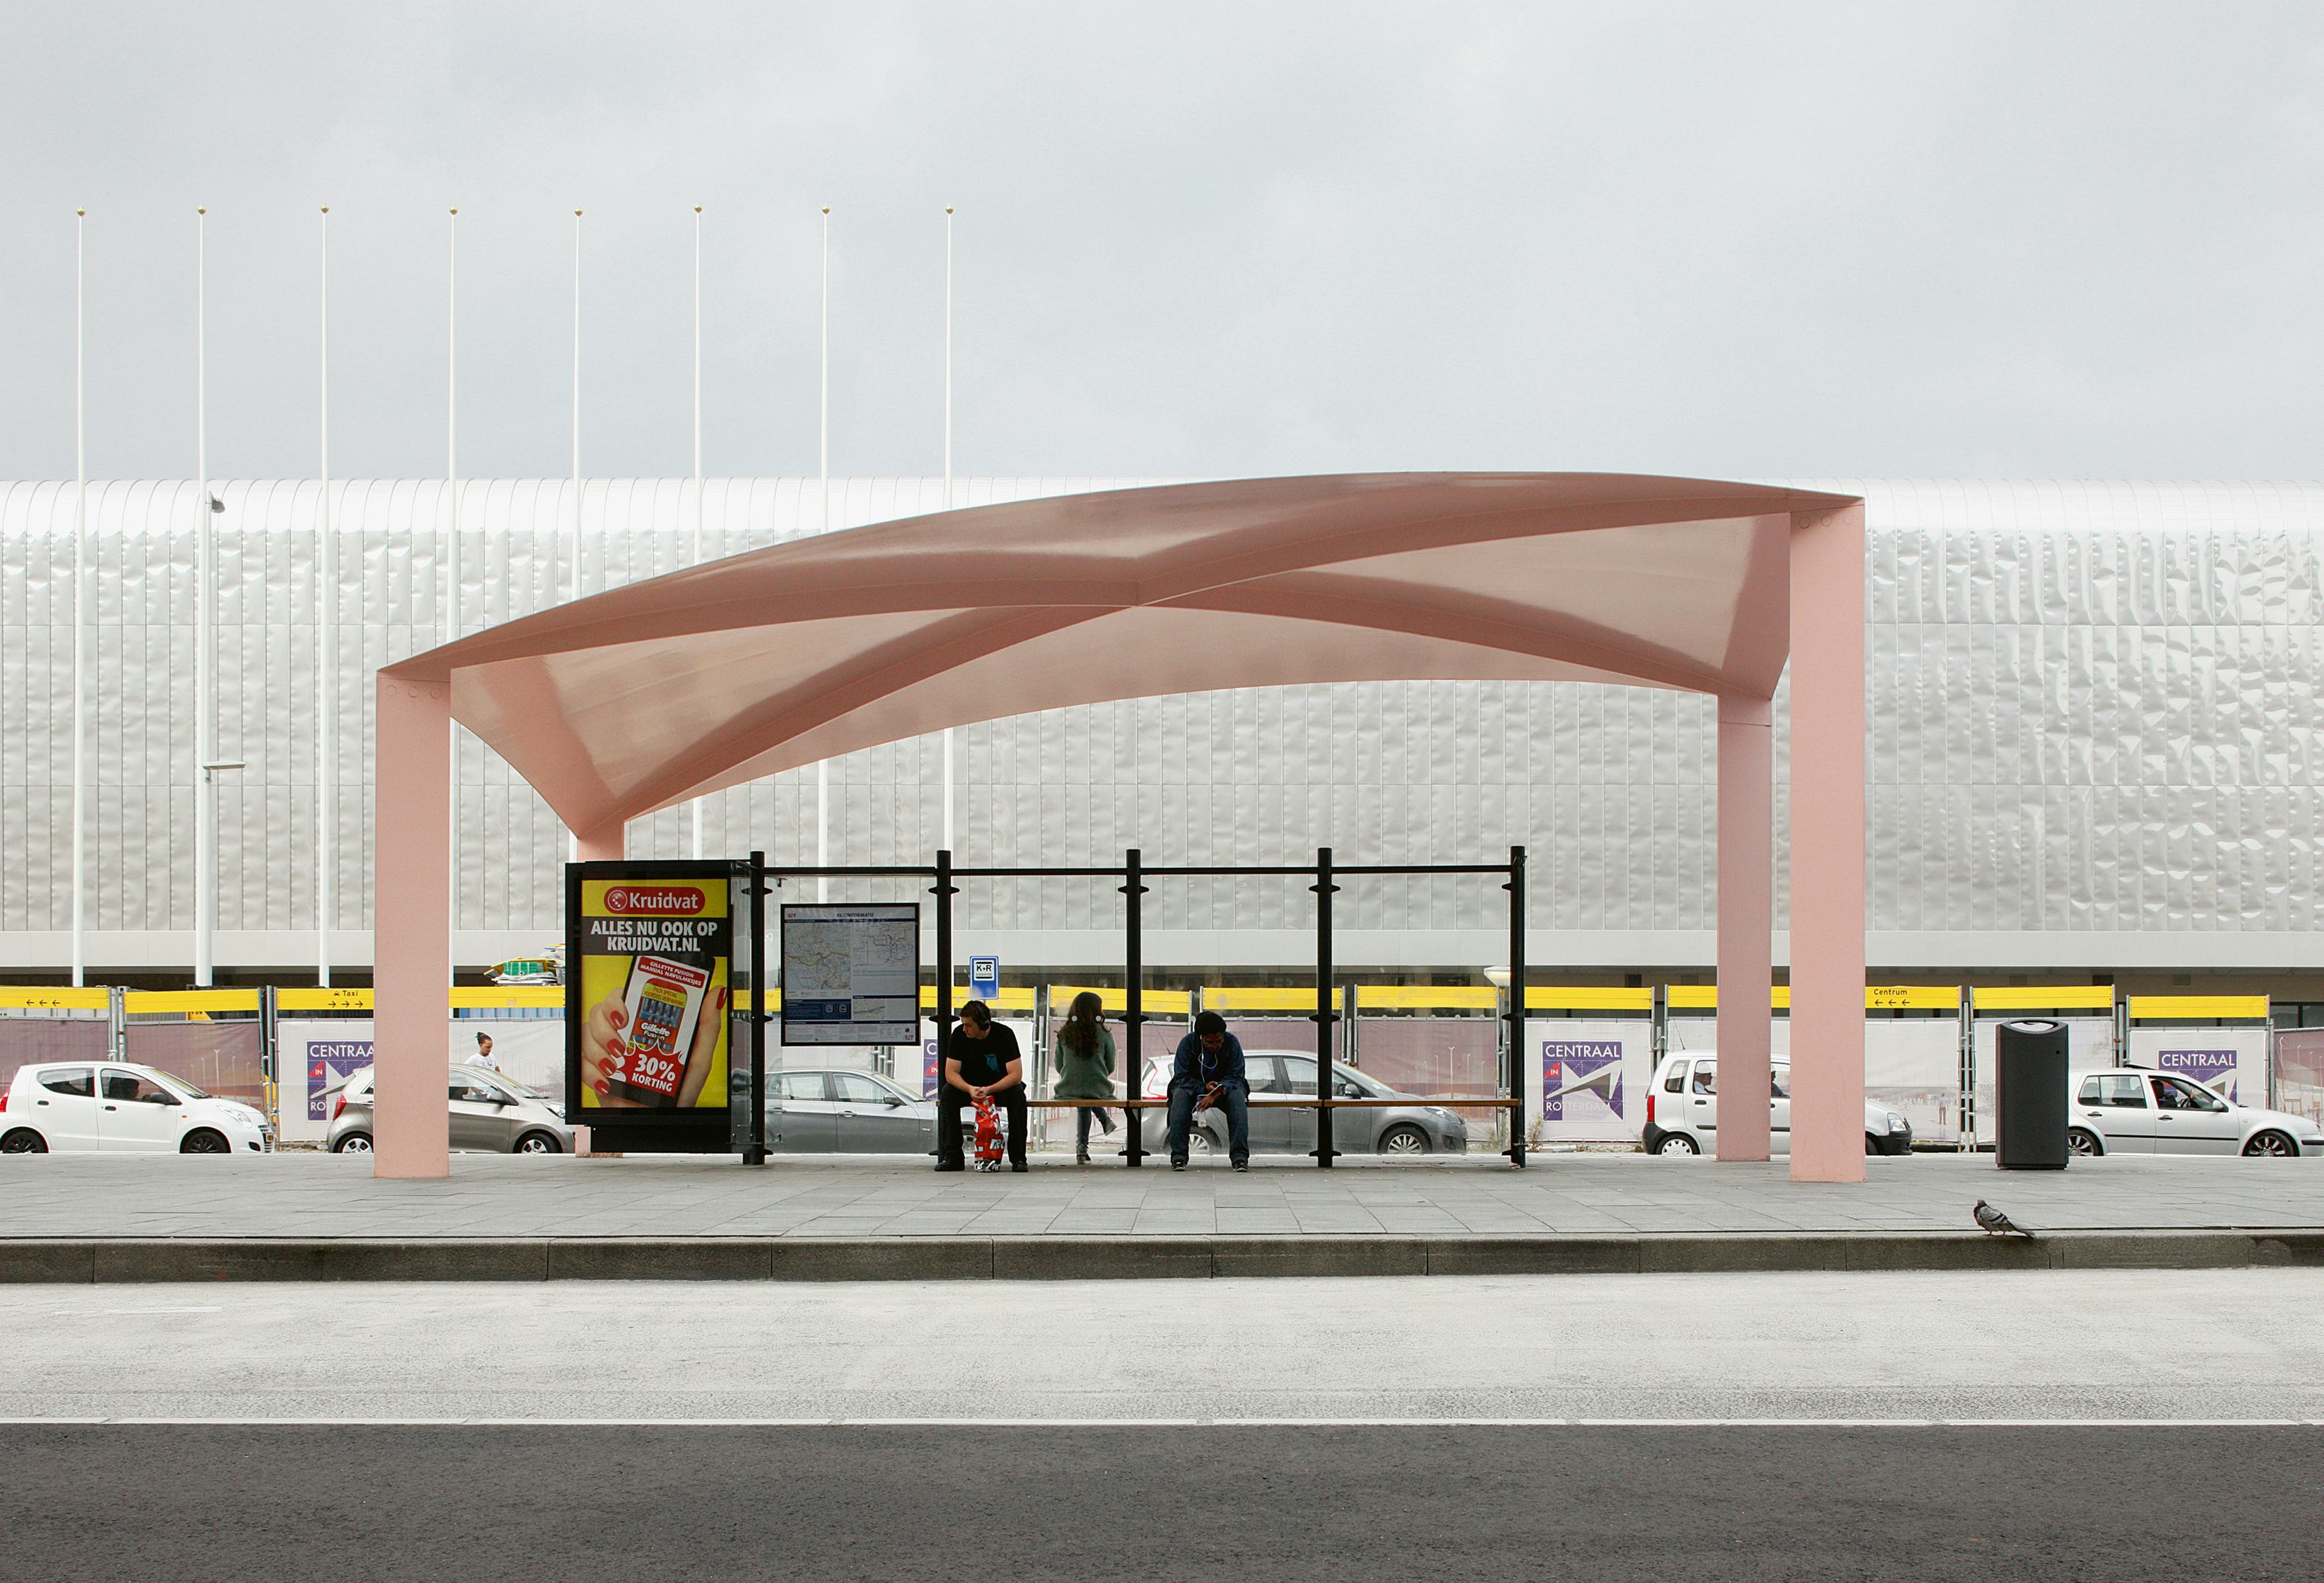 Het nieuwe busstation van Rotterdam bestaat uit drie lichte constructies voor wachtende passagiers. Ze bestaan uit een dunne staalplaat van vijf bij tien meter die ofwel opbolt ofwel inzakt, en vier platte stalen, diagonaal opgestelde kolommen die het dakvlak ondersteunen - Beeld Filip Dujardin